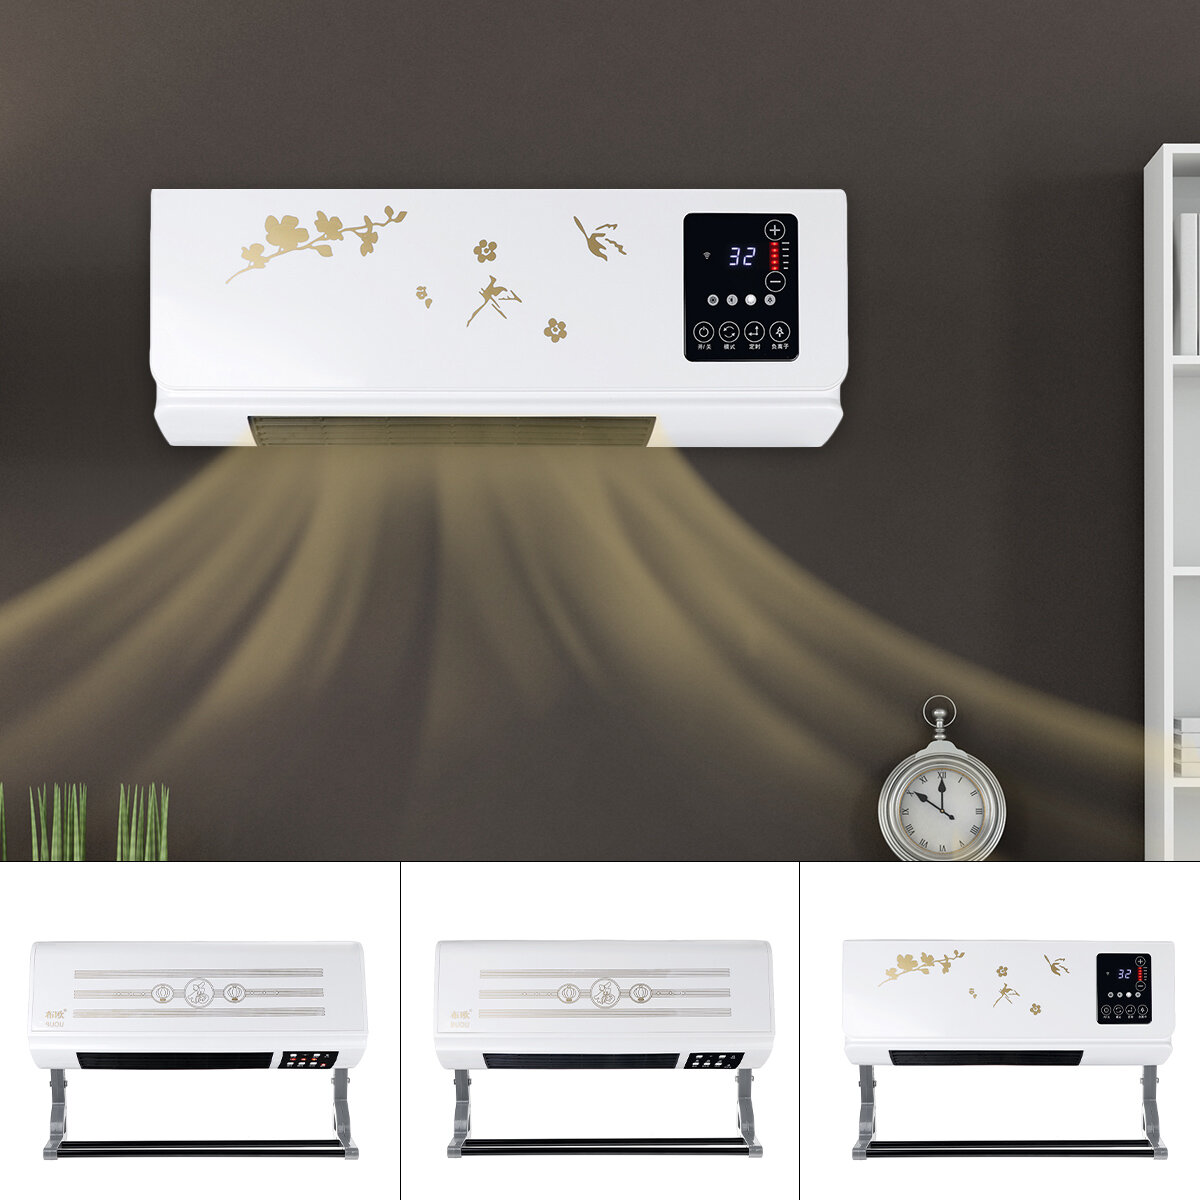 220 فولت سخان الهواء المثبت على الحائط للتدفئة / التبريد التحكم عن بعد مروحة مكيف للمنزل والمكتب